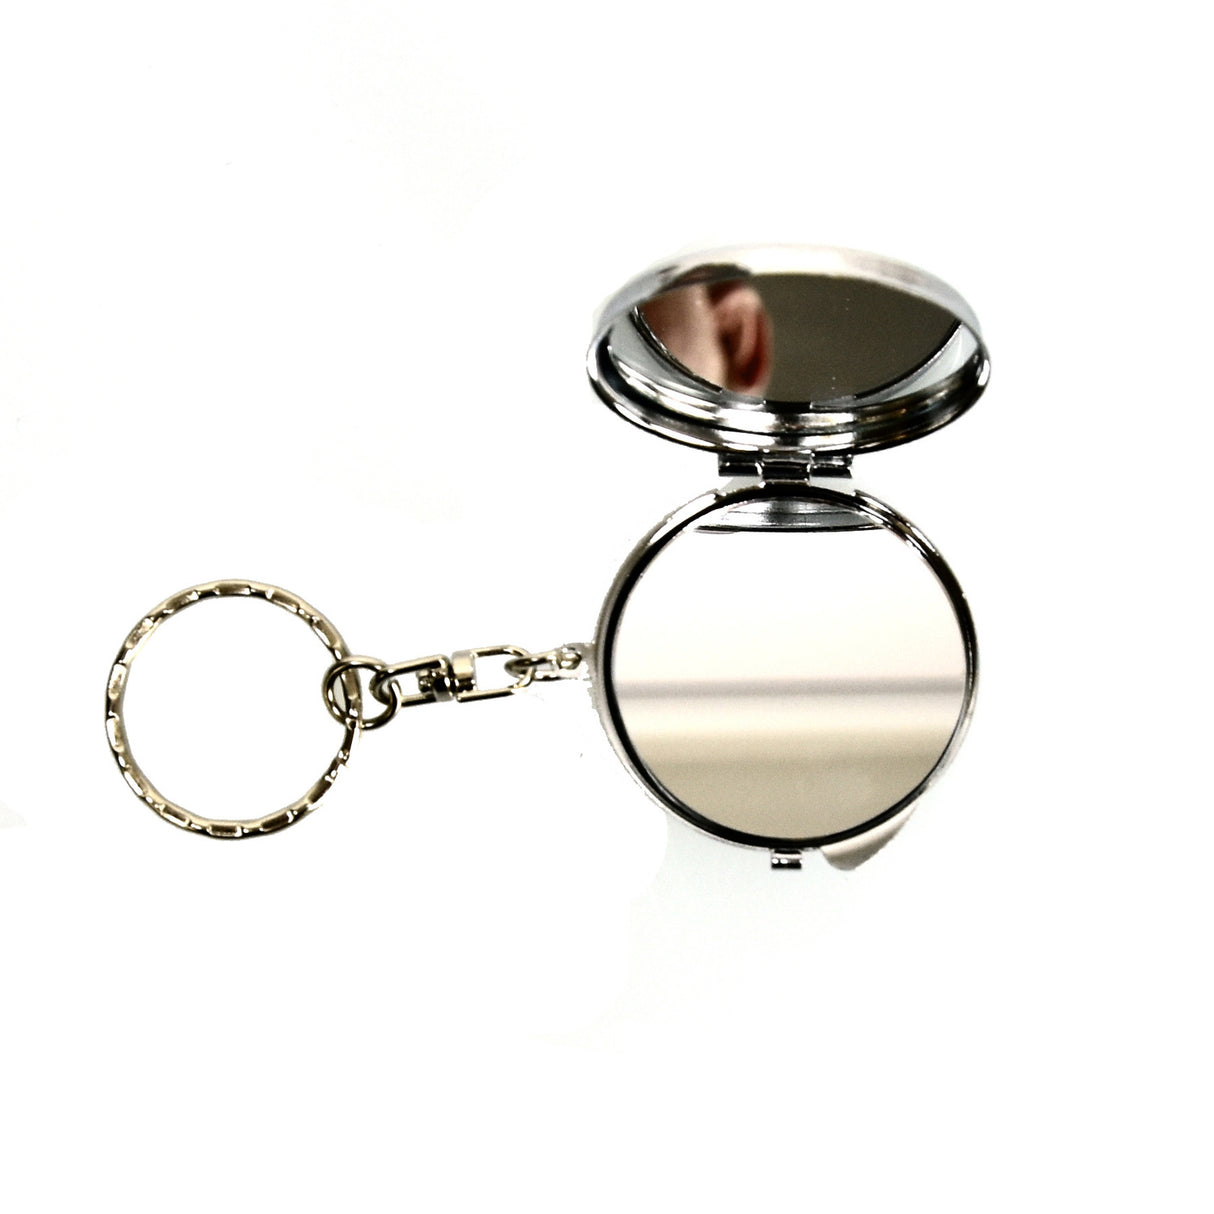 Einhorn Taschenspiegel mit Schlüsselring